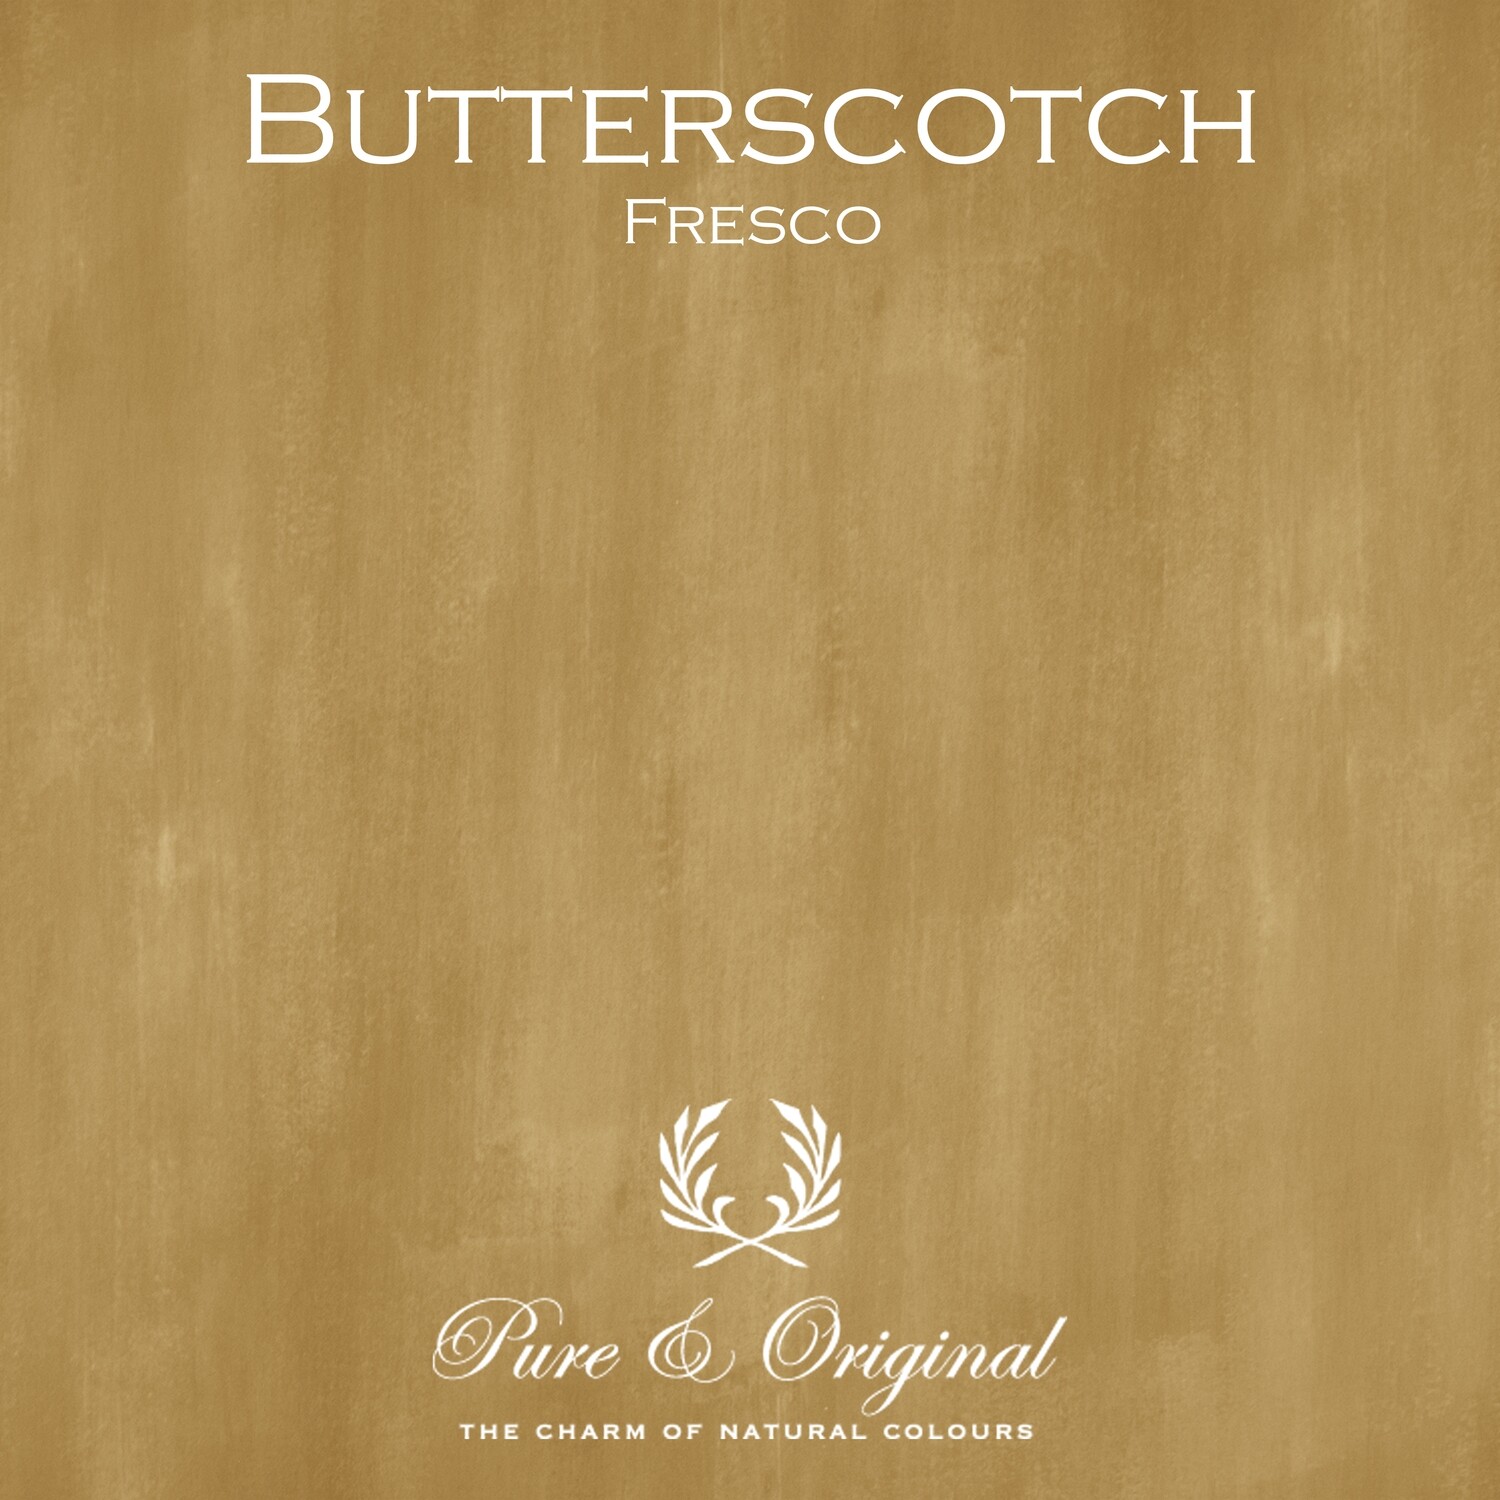 Butterscotch Fresco